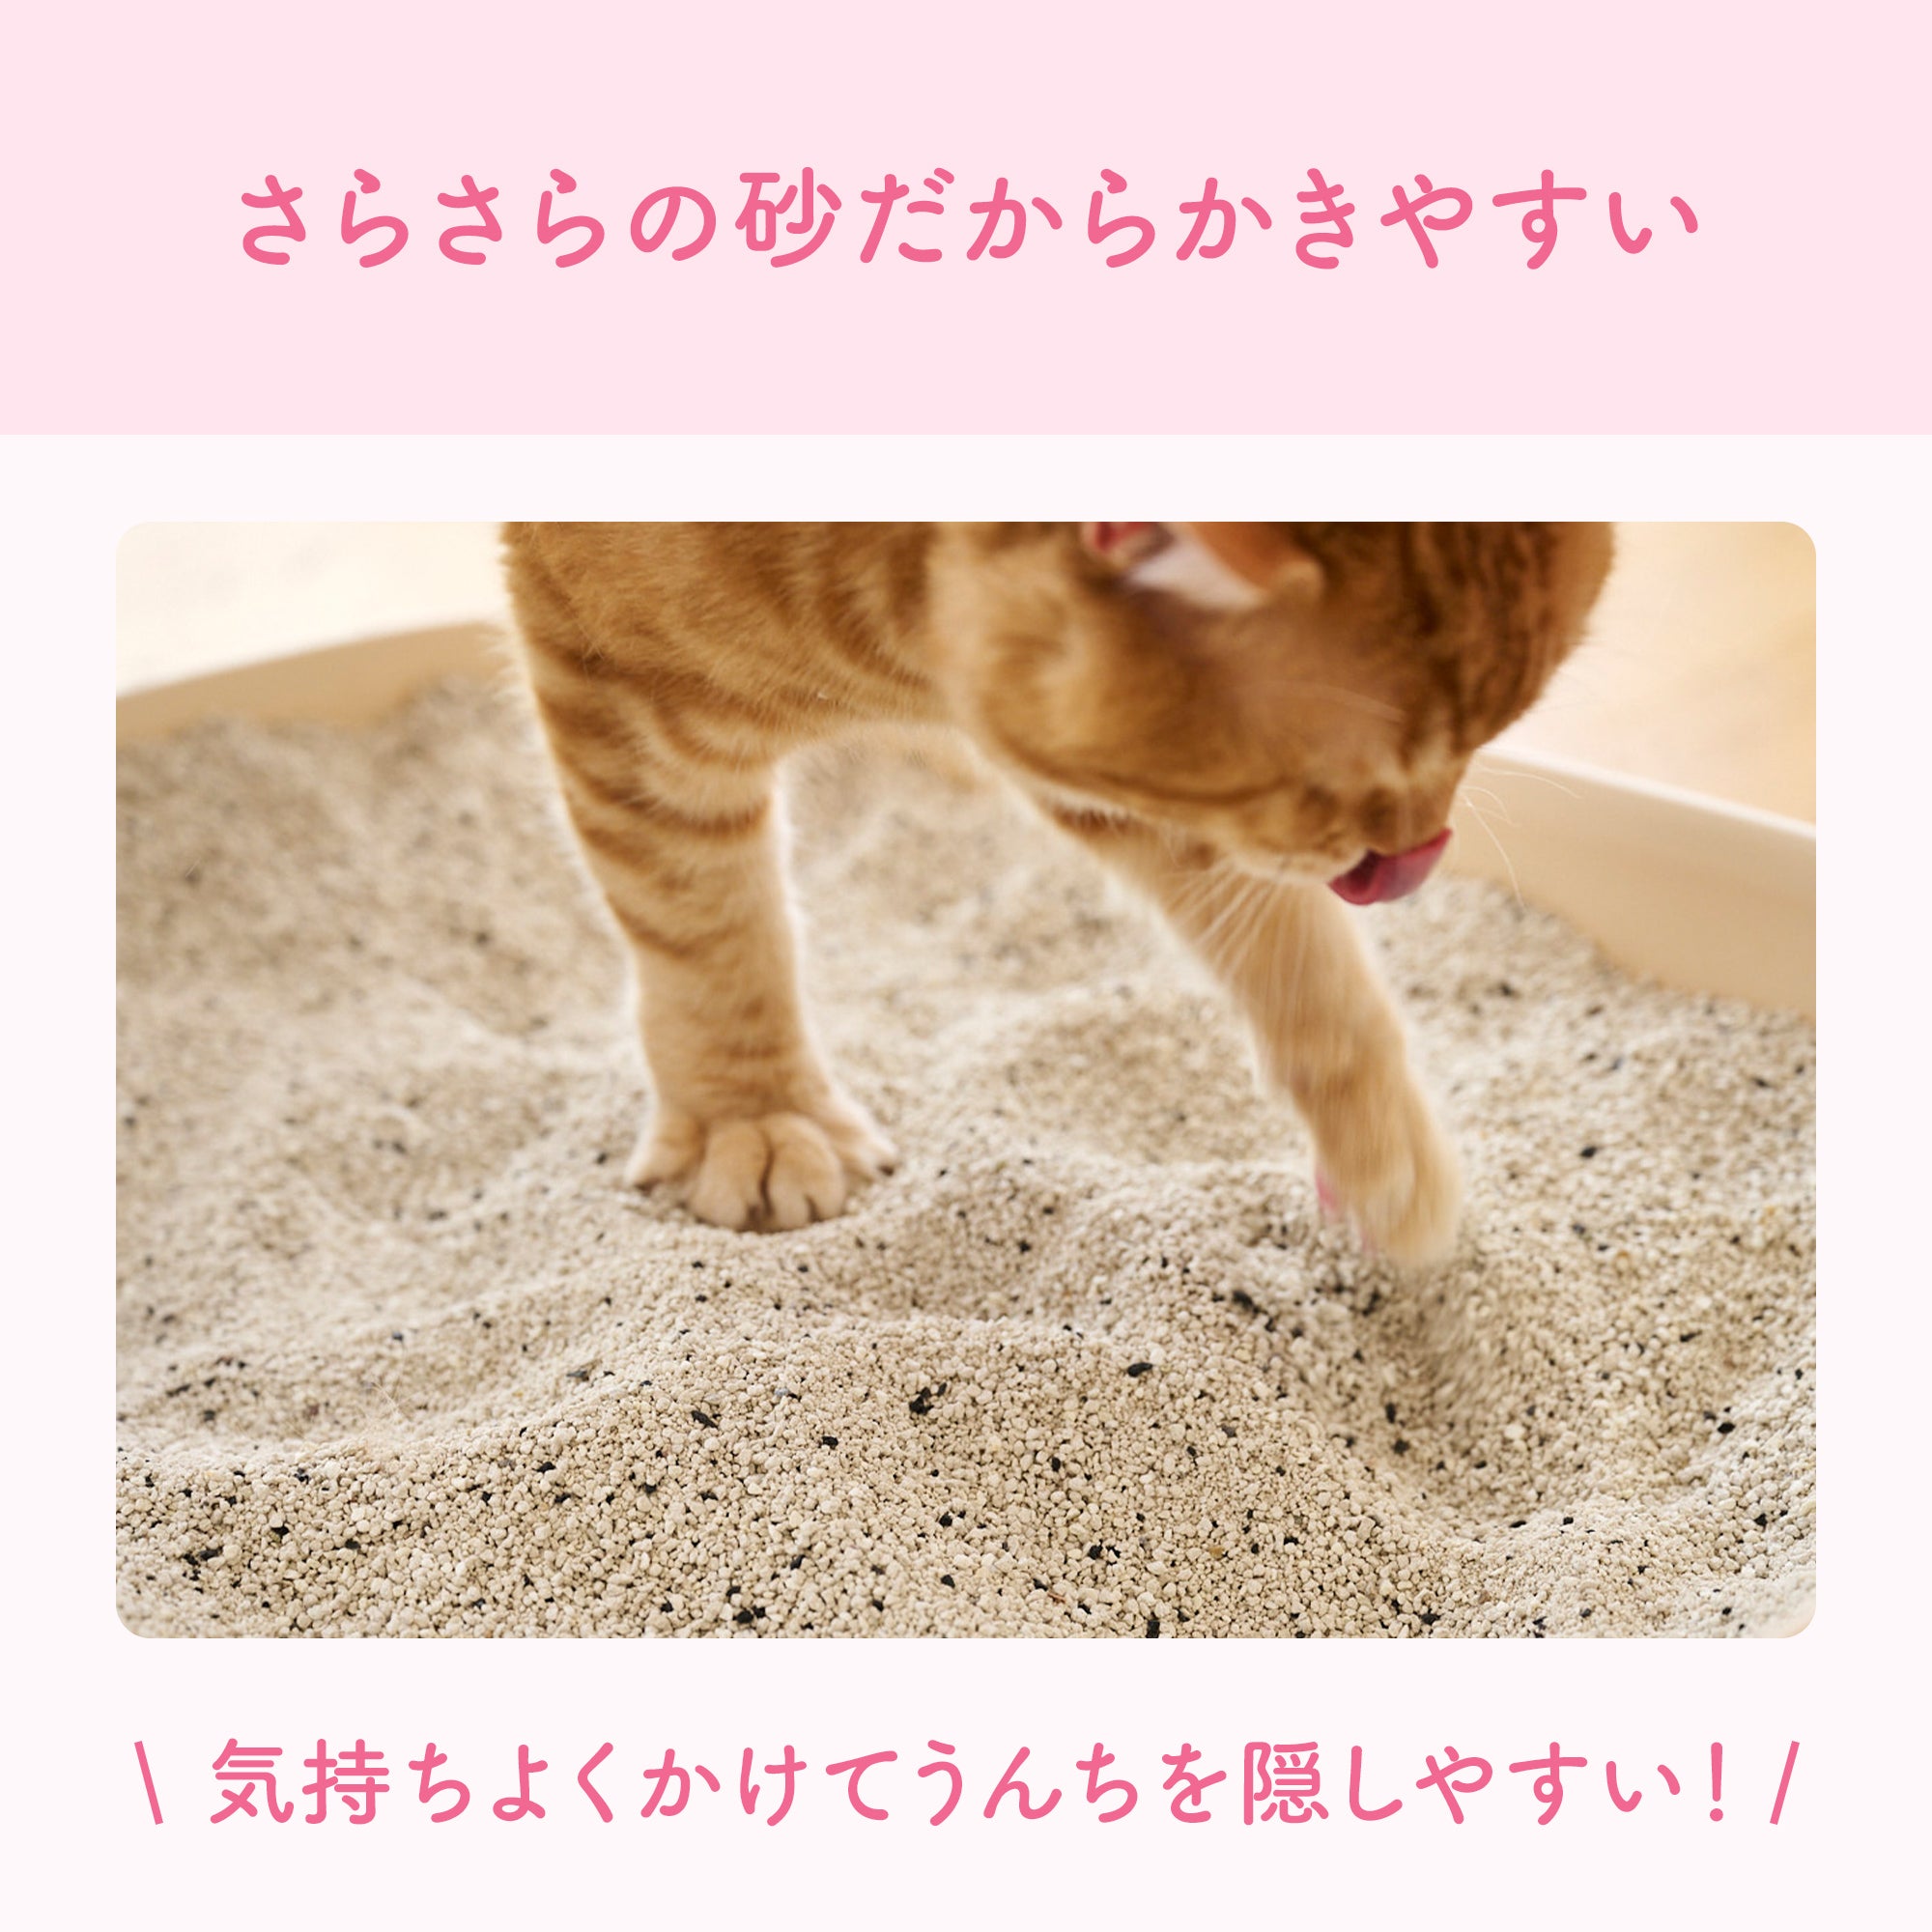 キミおもい カチッと固まる ネコ砂